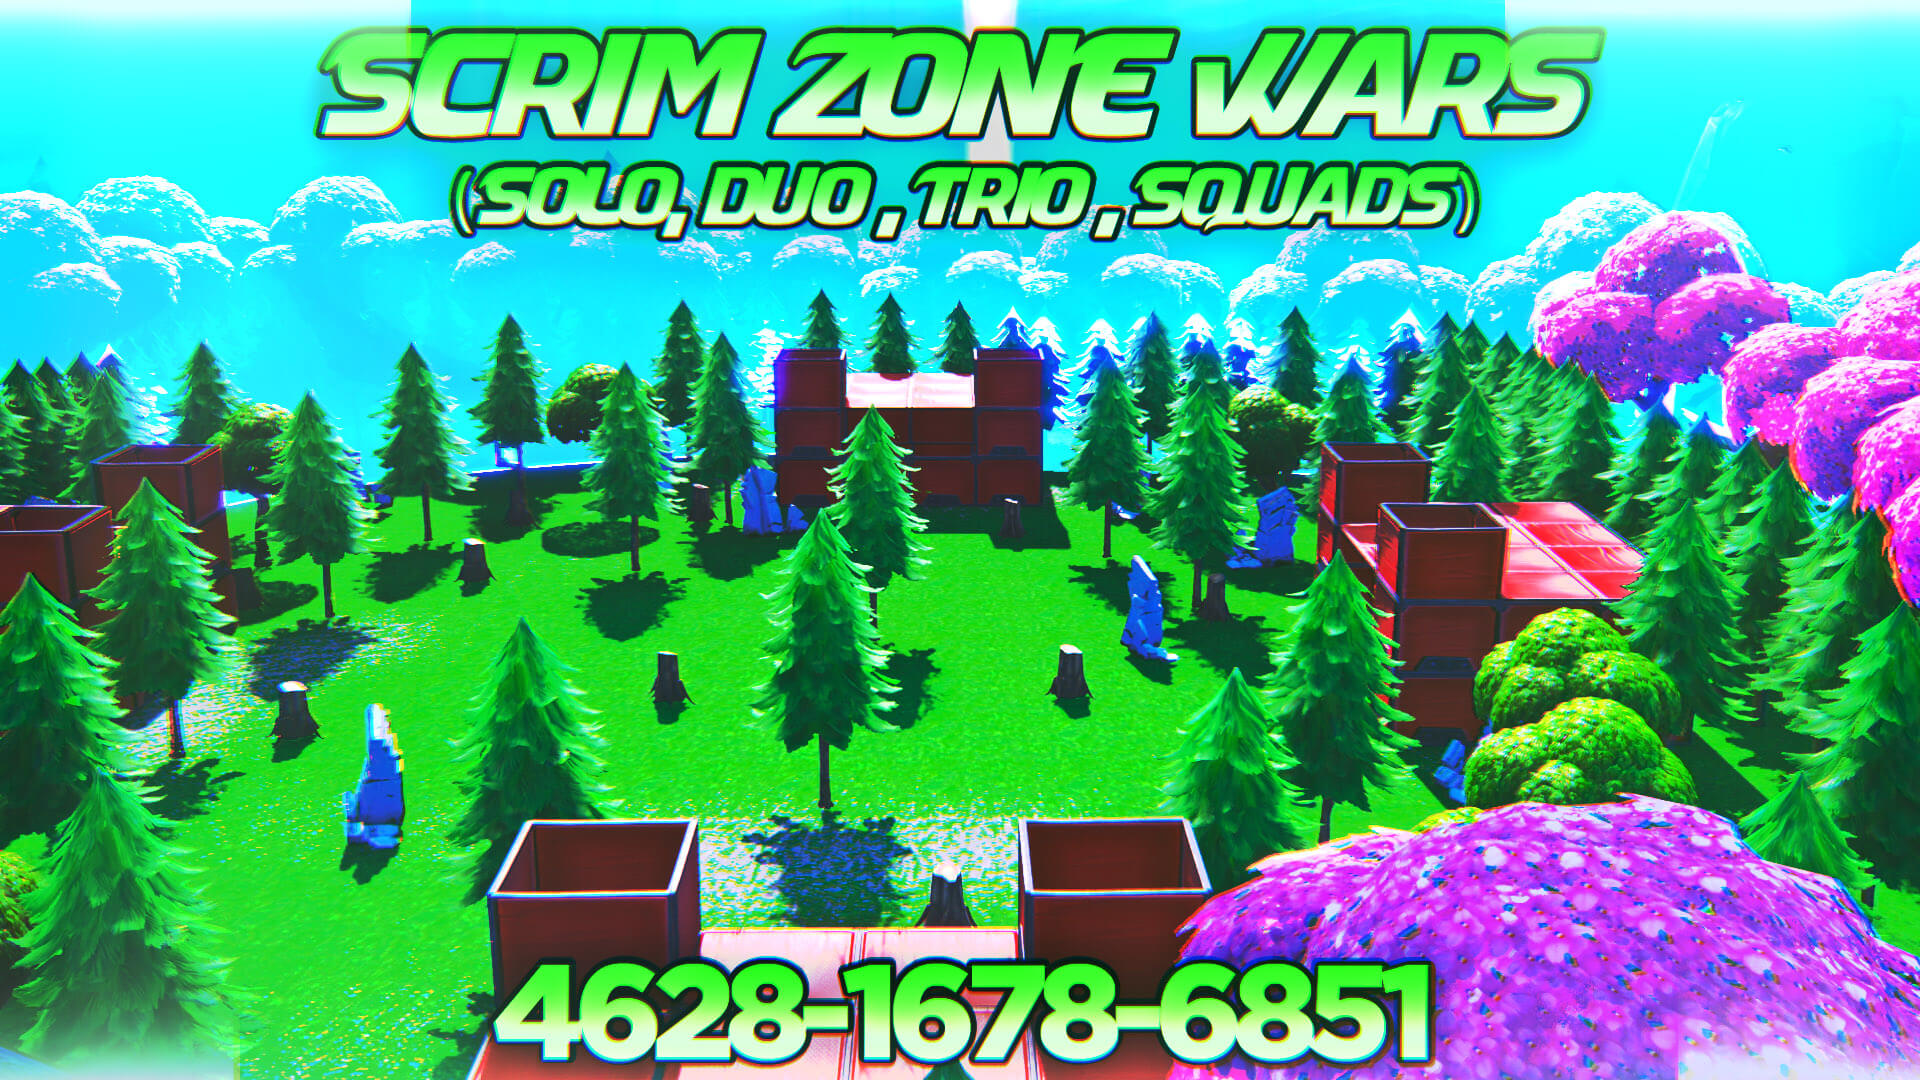 Fortnite Scrims Duo Code Scrim Zone Wars Solo Duo Trio Squads Fortnite Creative Map Code Dropnite